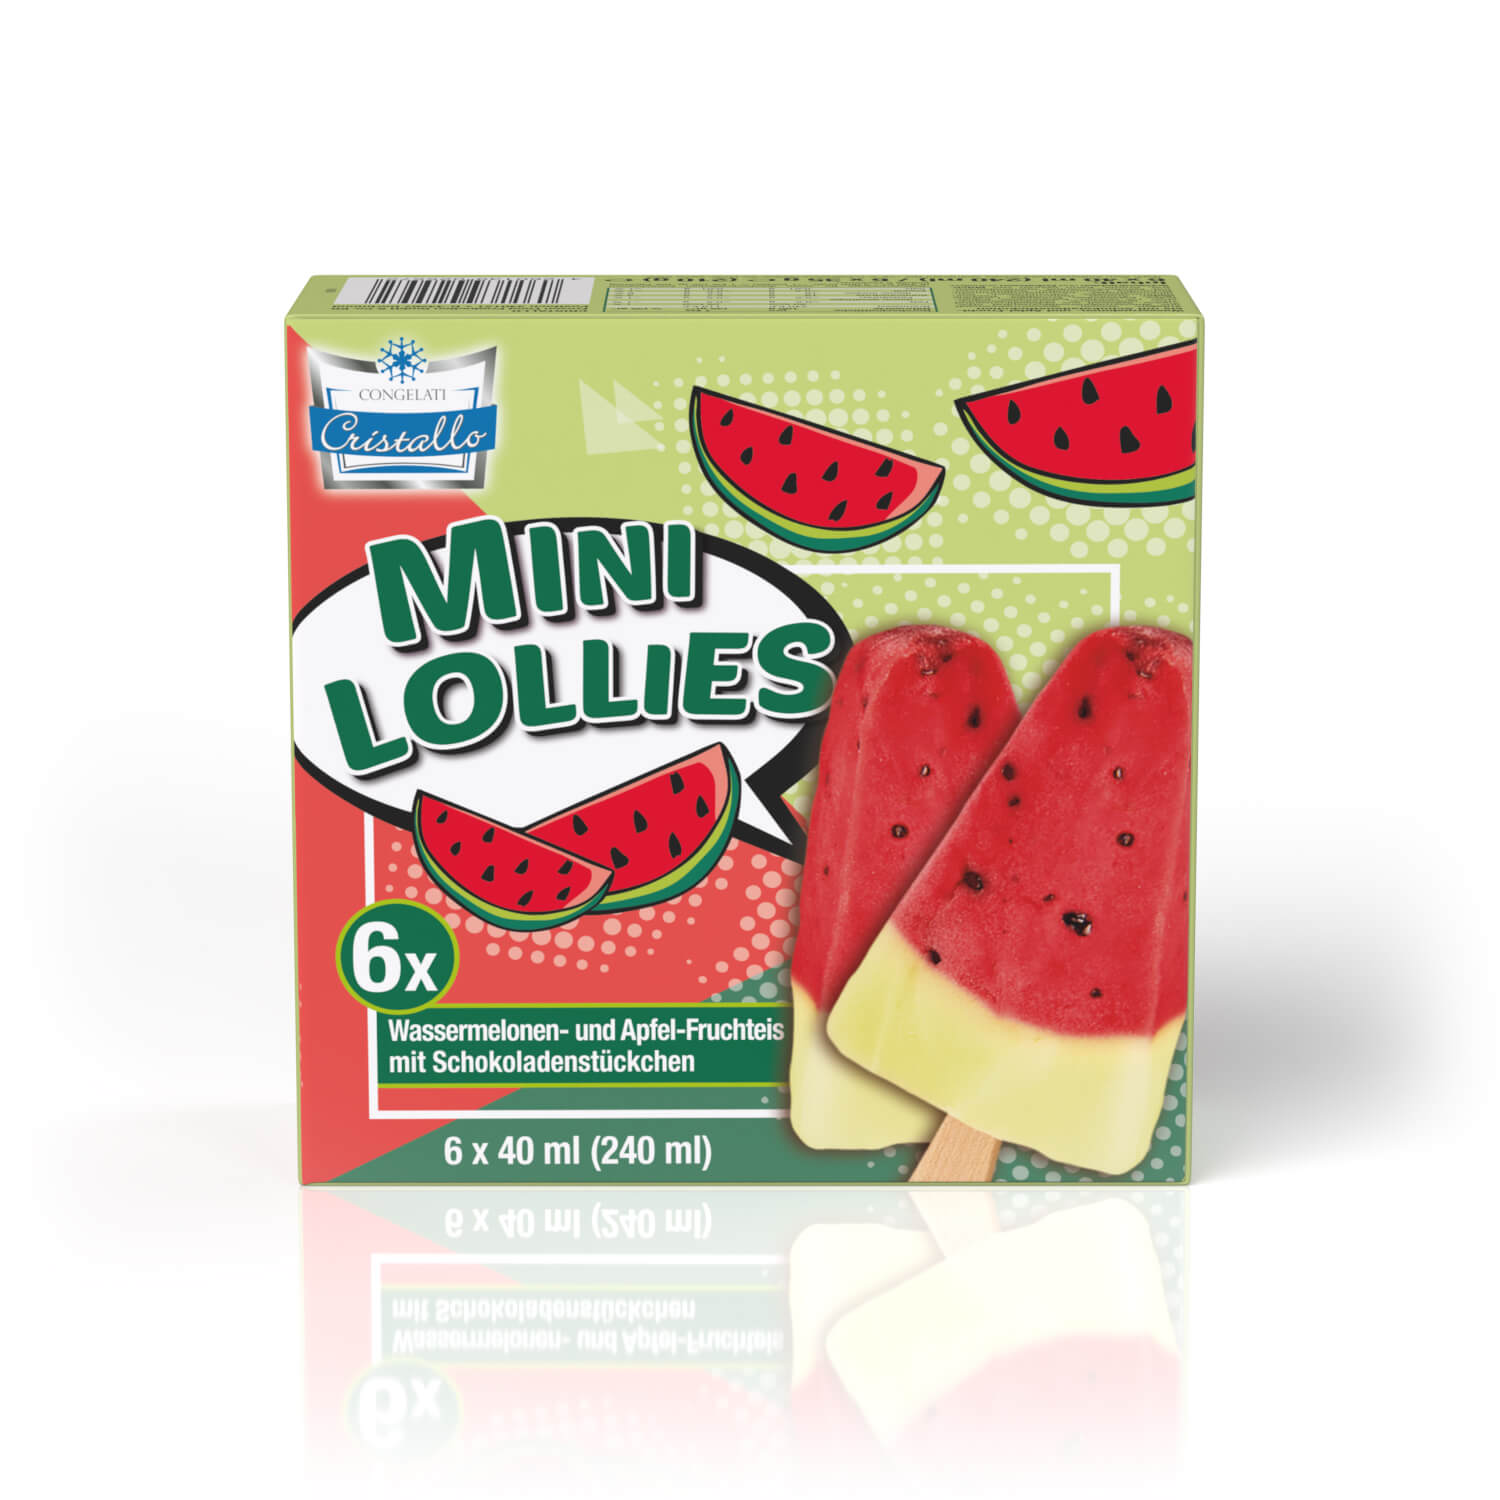 Cristallo Frucht-Stieleis Mini Lollies Wassermelone